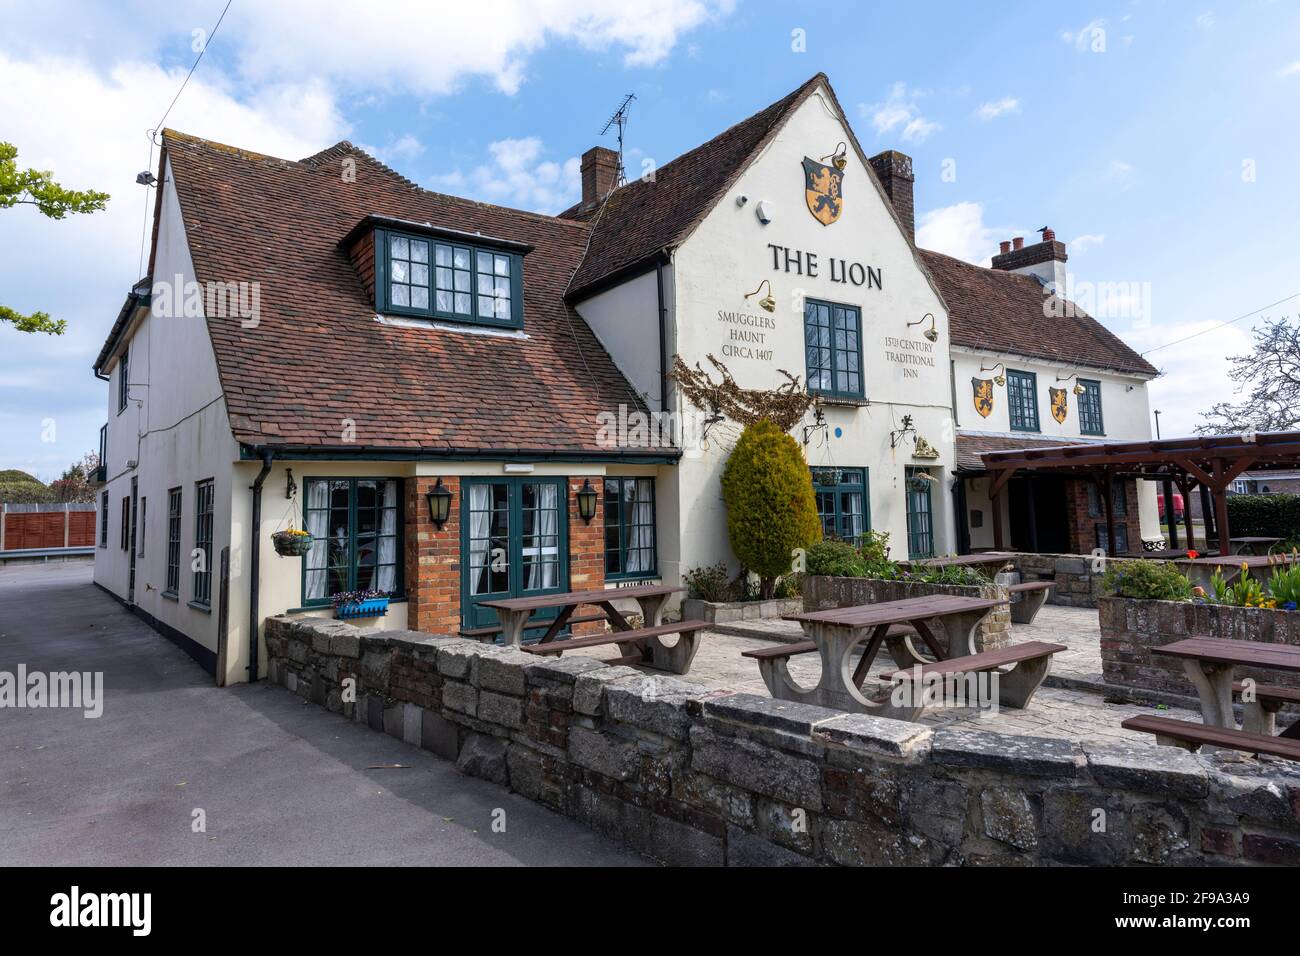 The Lion Inn - public house - Pagham, Bognor Regis, West Sussex, England, UK a Hall & Woodhouse pub. Stock Photo